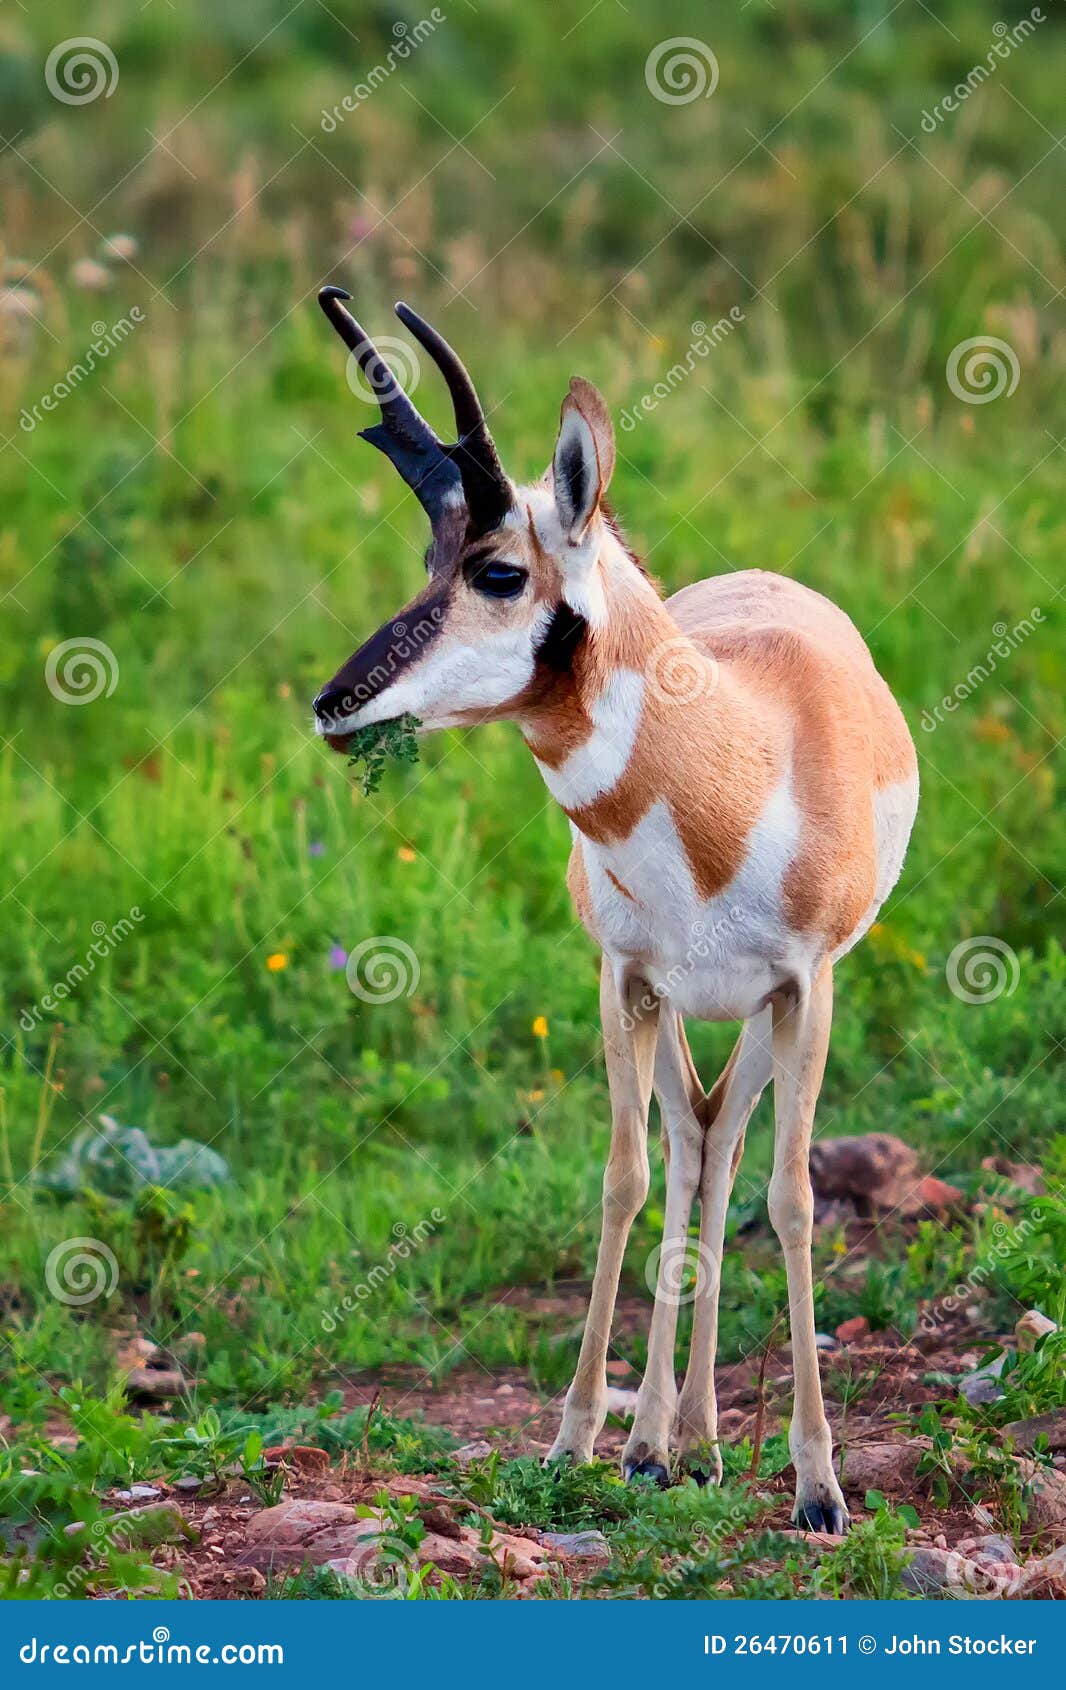 pronghorn antelope grazing